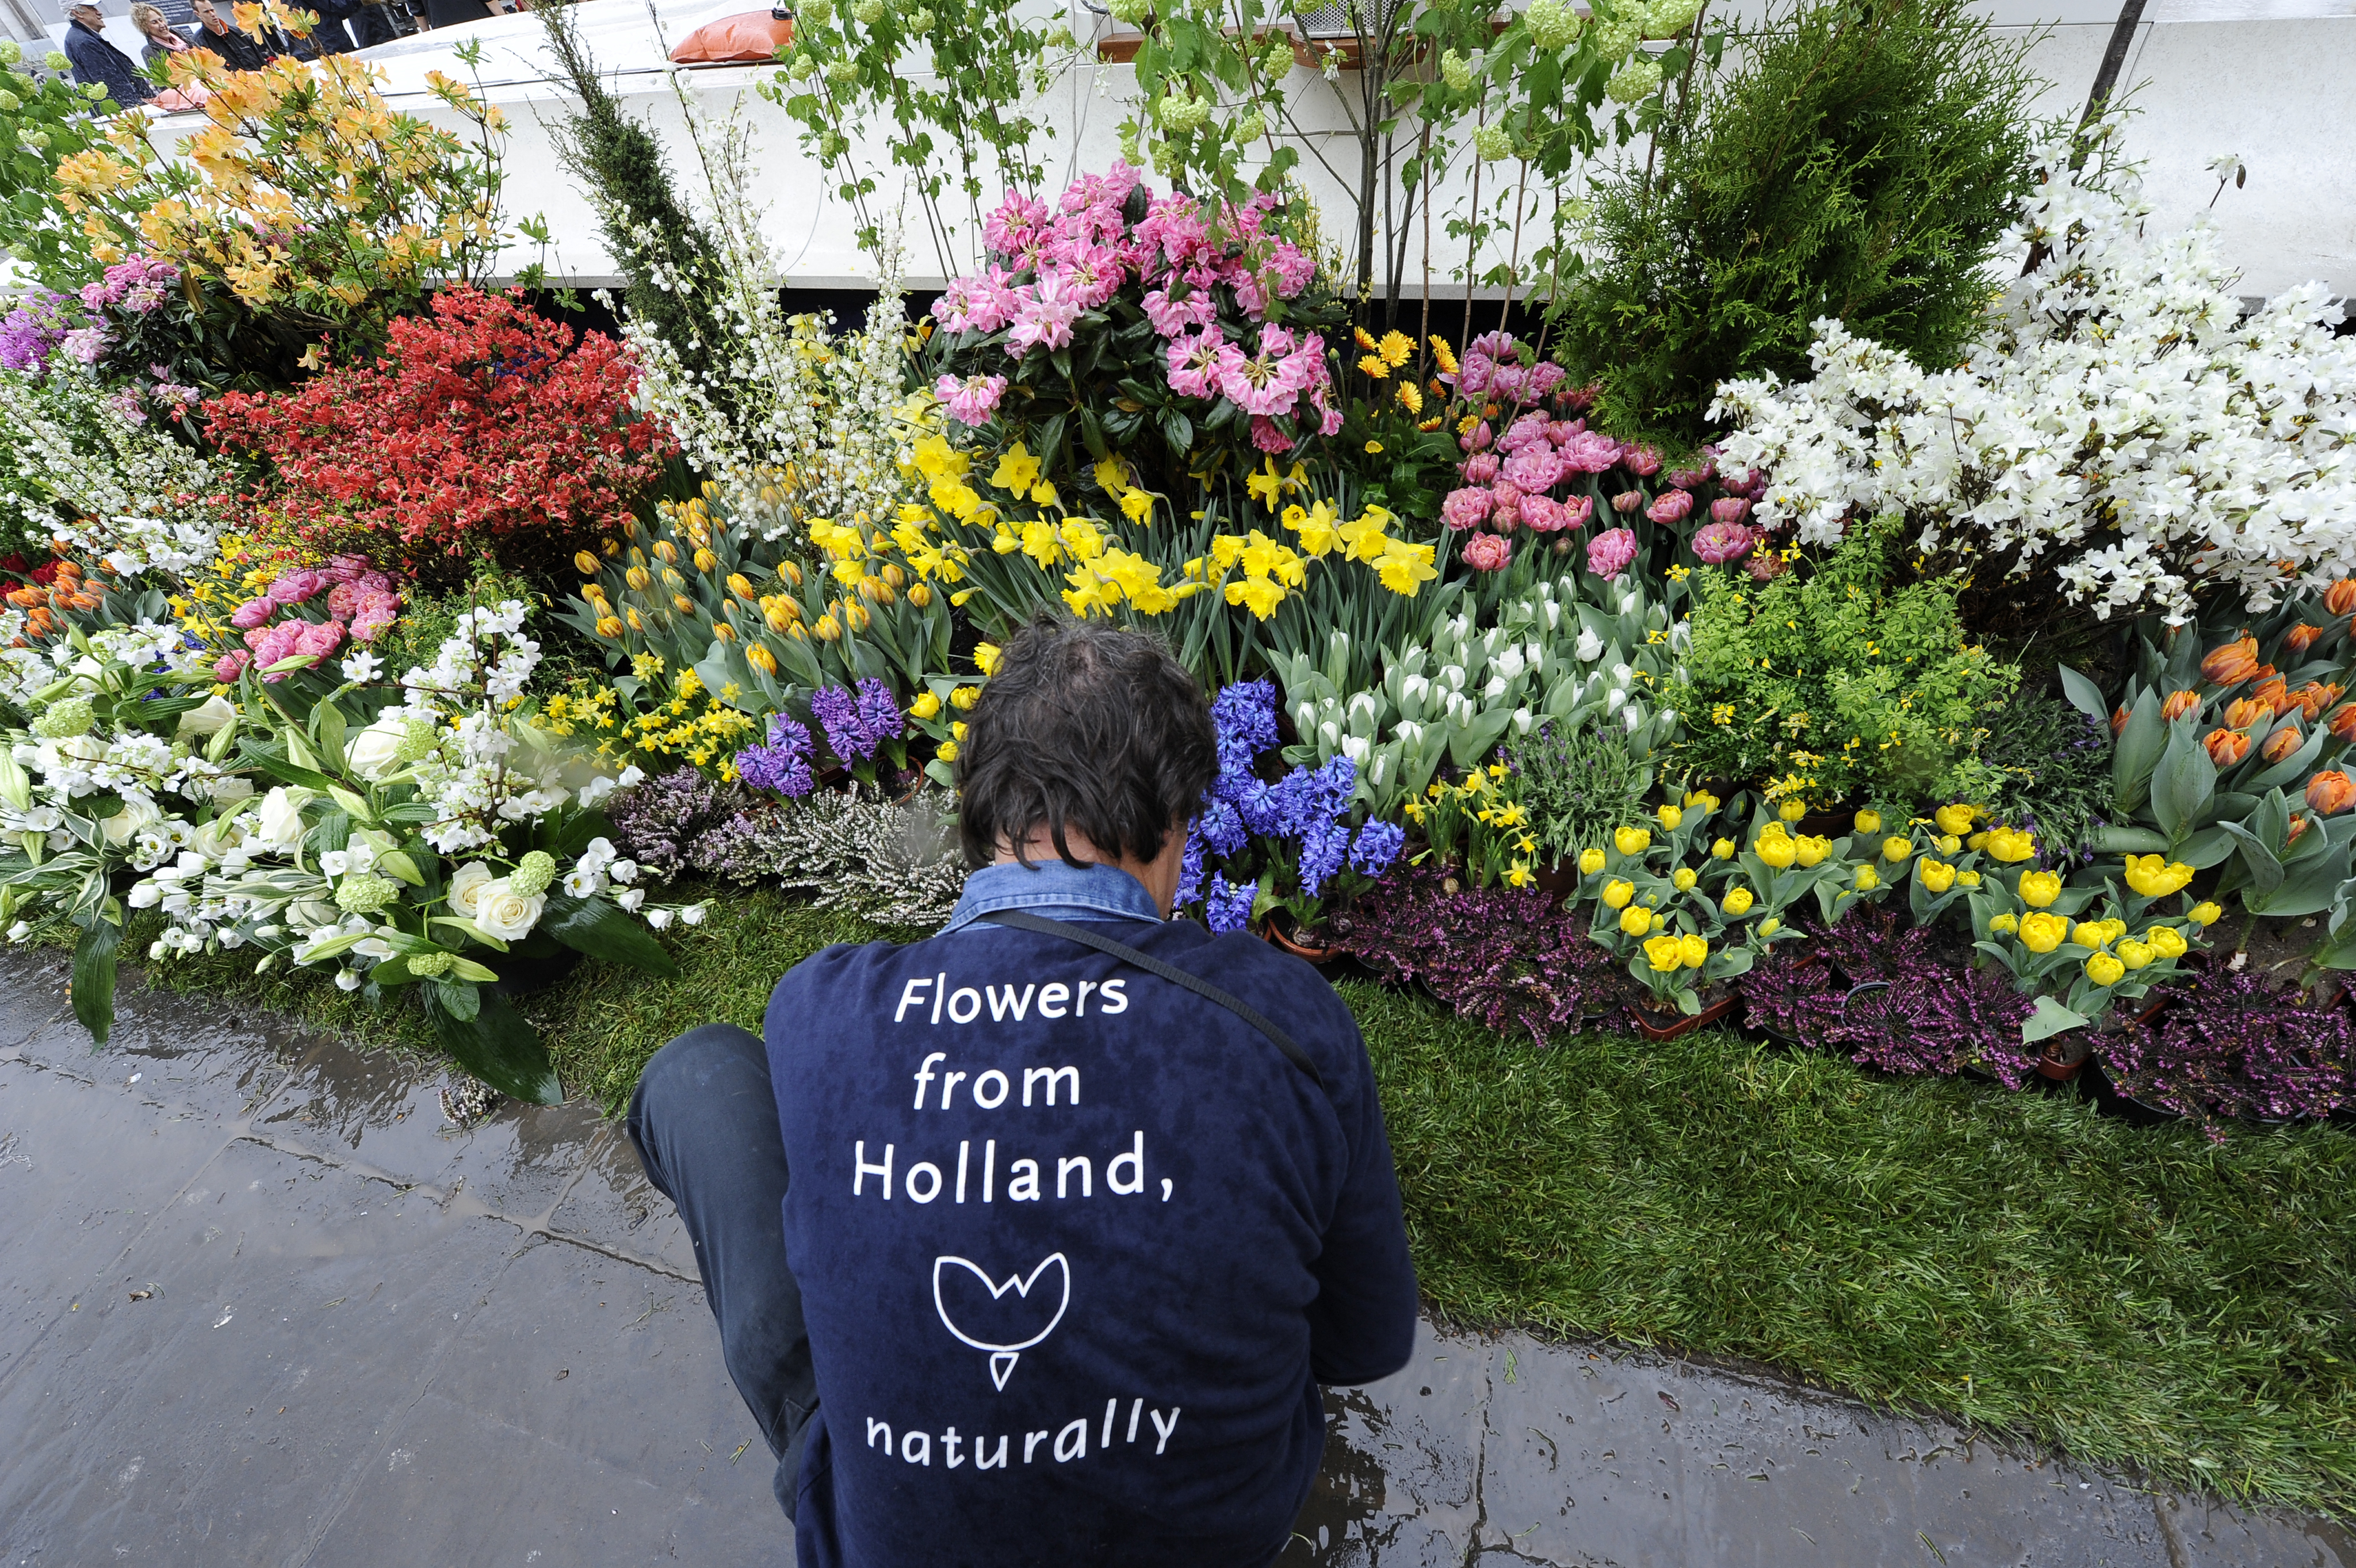 Het Sint Pietersplein in Rome wordt versierd met bloemen van de Nederlandse bloemist Charles van der Voort. Op Paaszondag spreekt de paus hier het Urbi et Orbi uit. ANP MAURIZIO BRAMBATTI